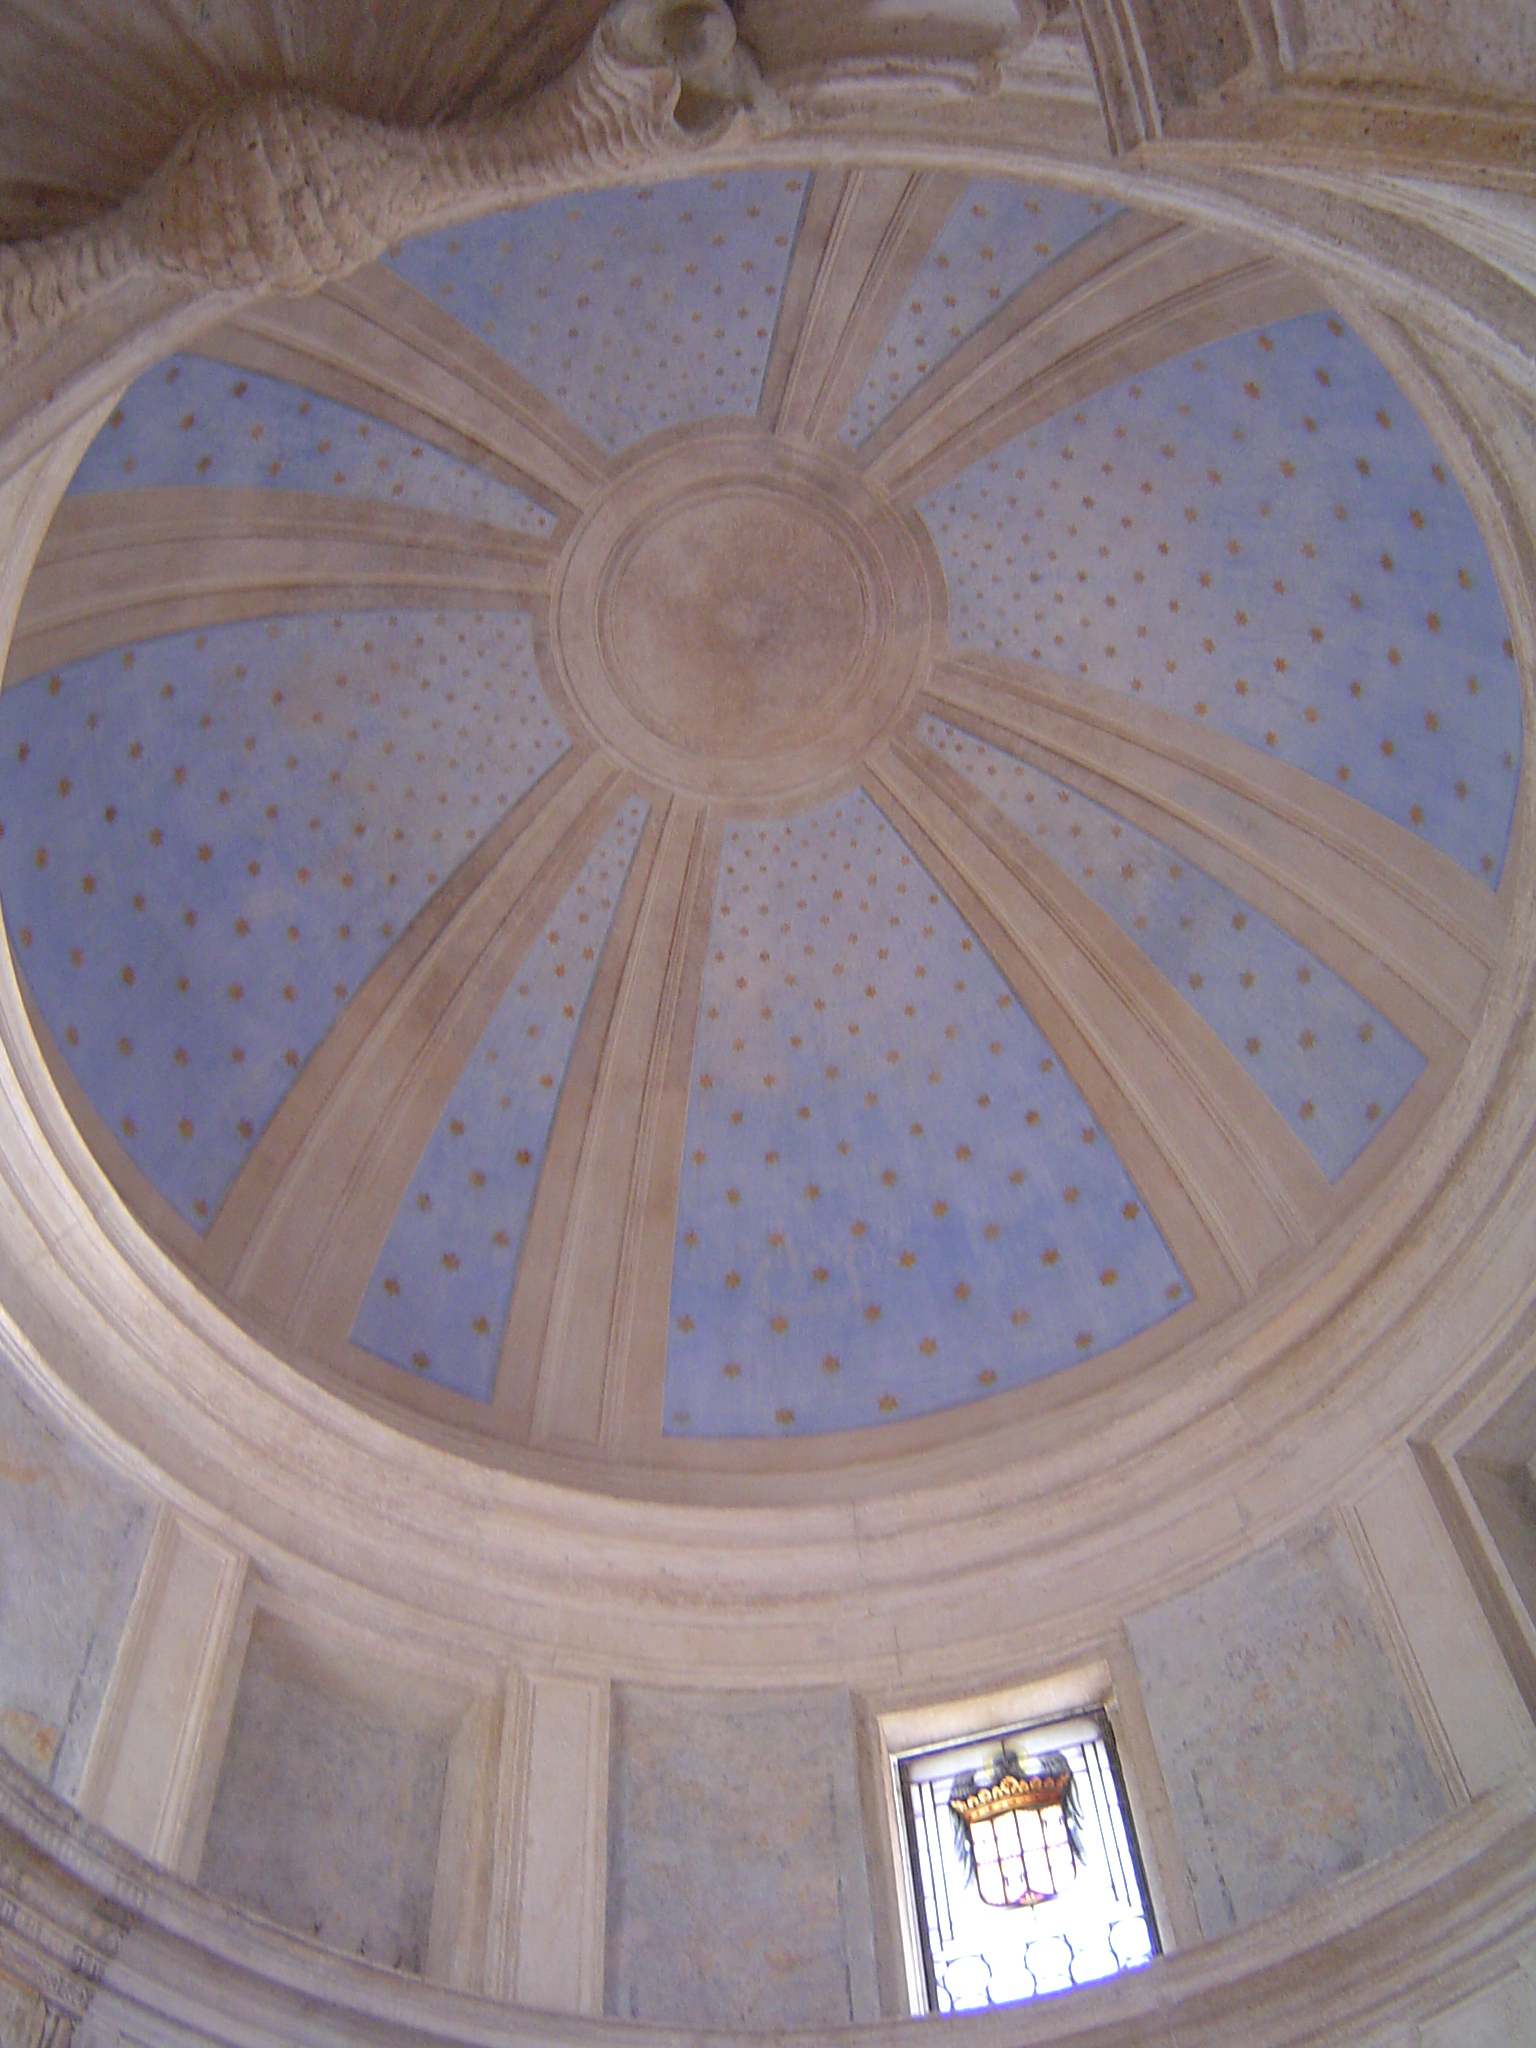 Interior of tempietto dome